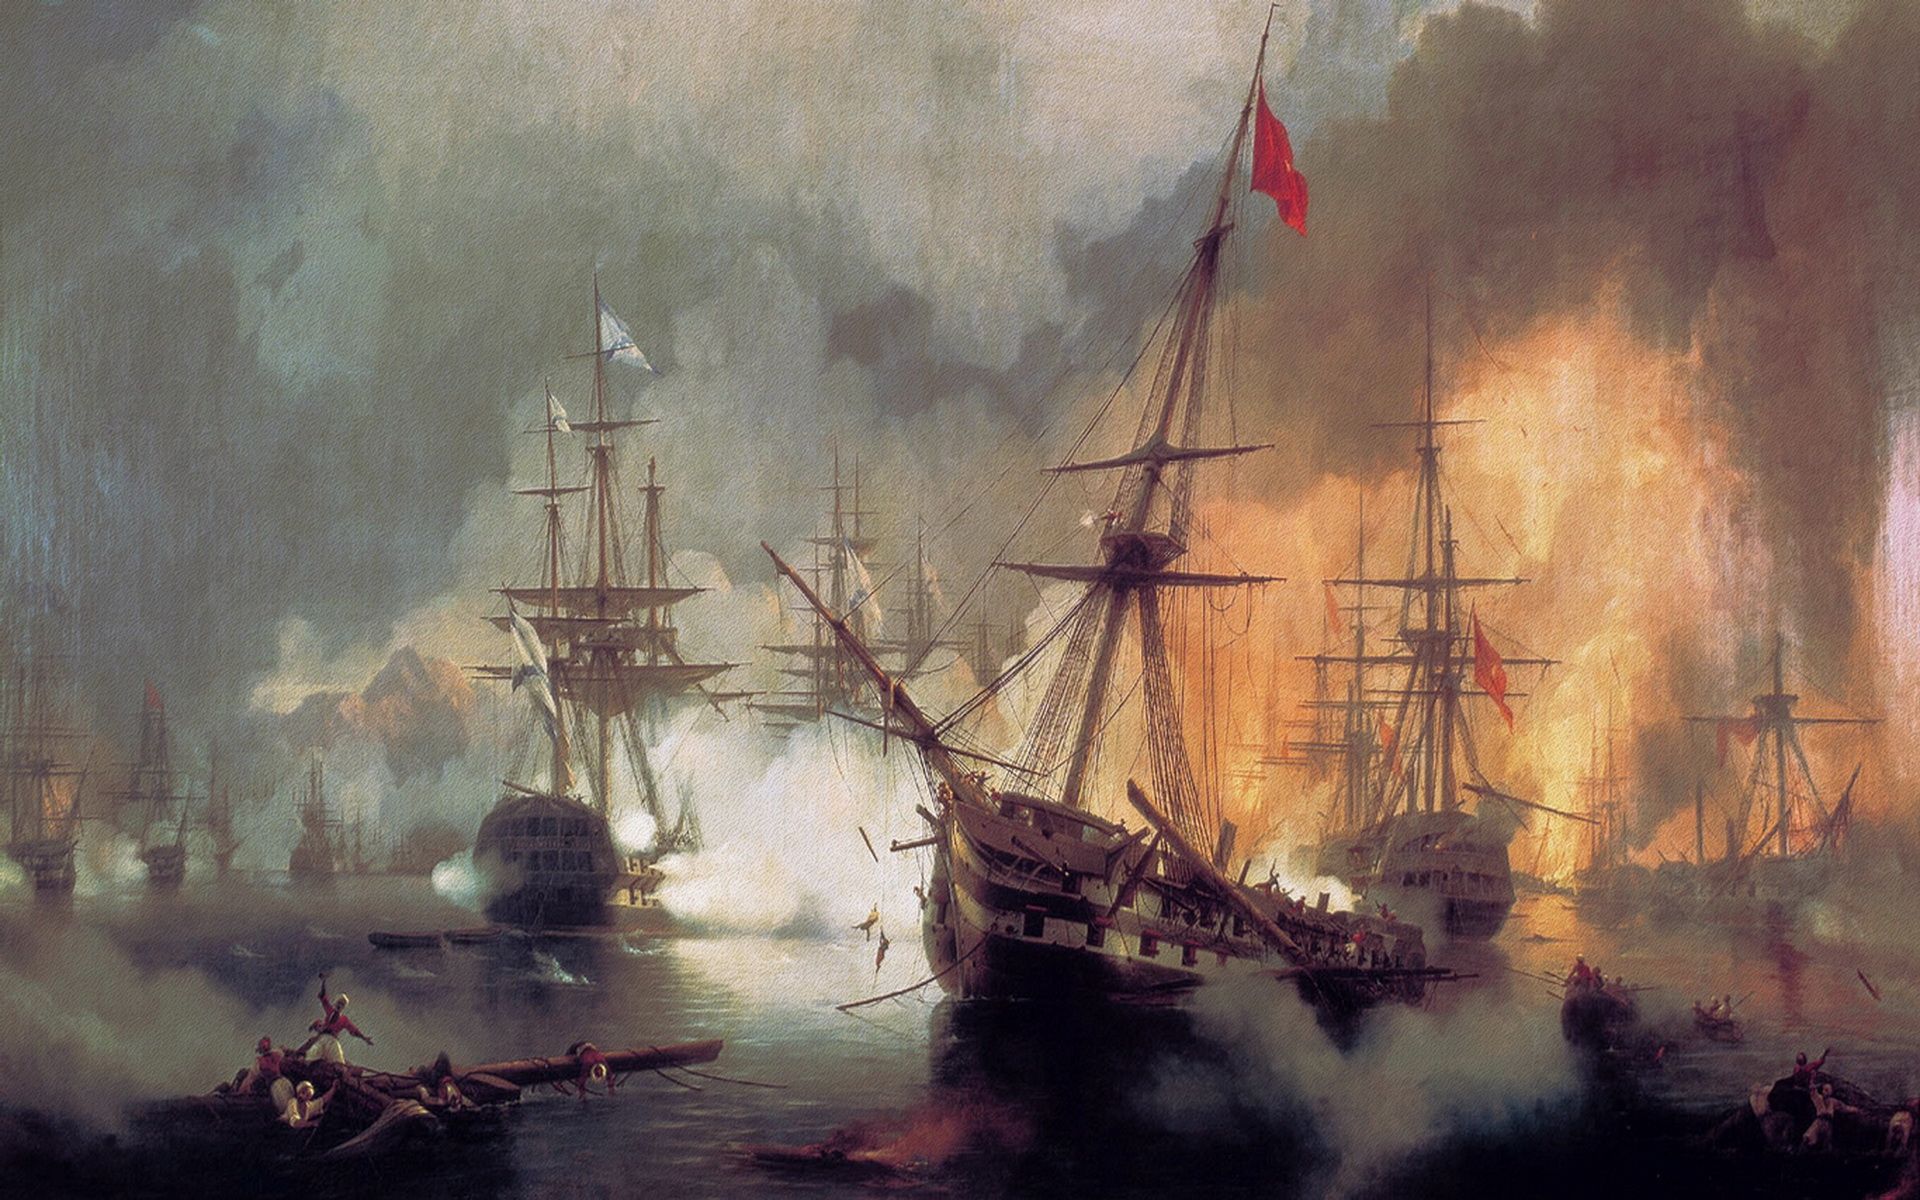 Battle Pirates Fire Oil Painting HD Wallpaper Desktop Widescreen Art Free Download. Ship paintings, Painting, Oil painting on canvas